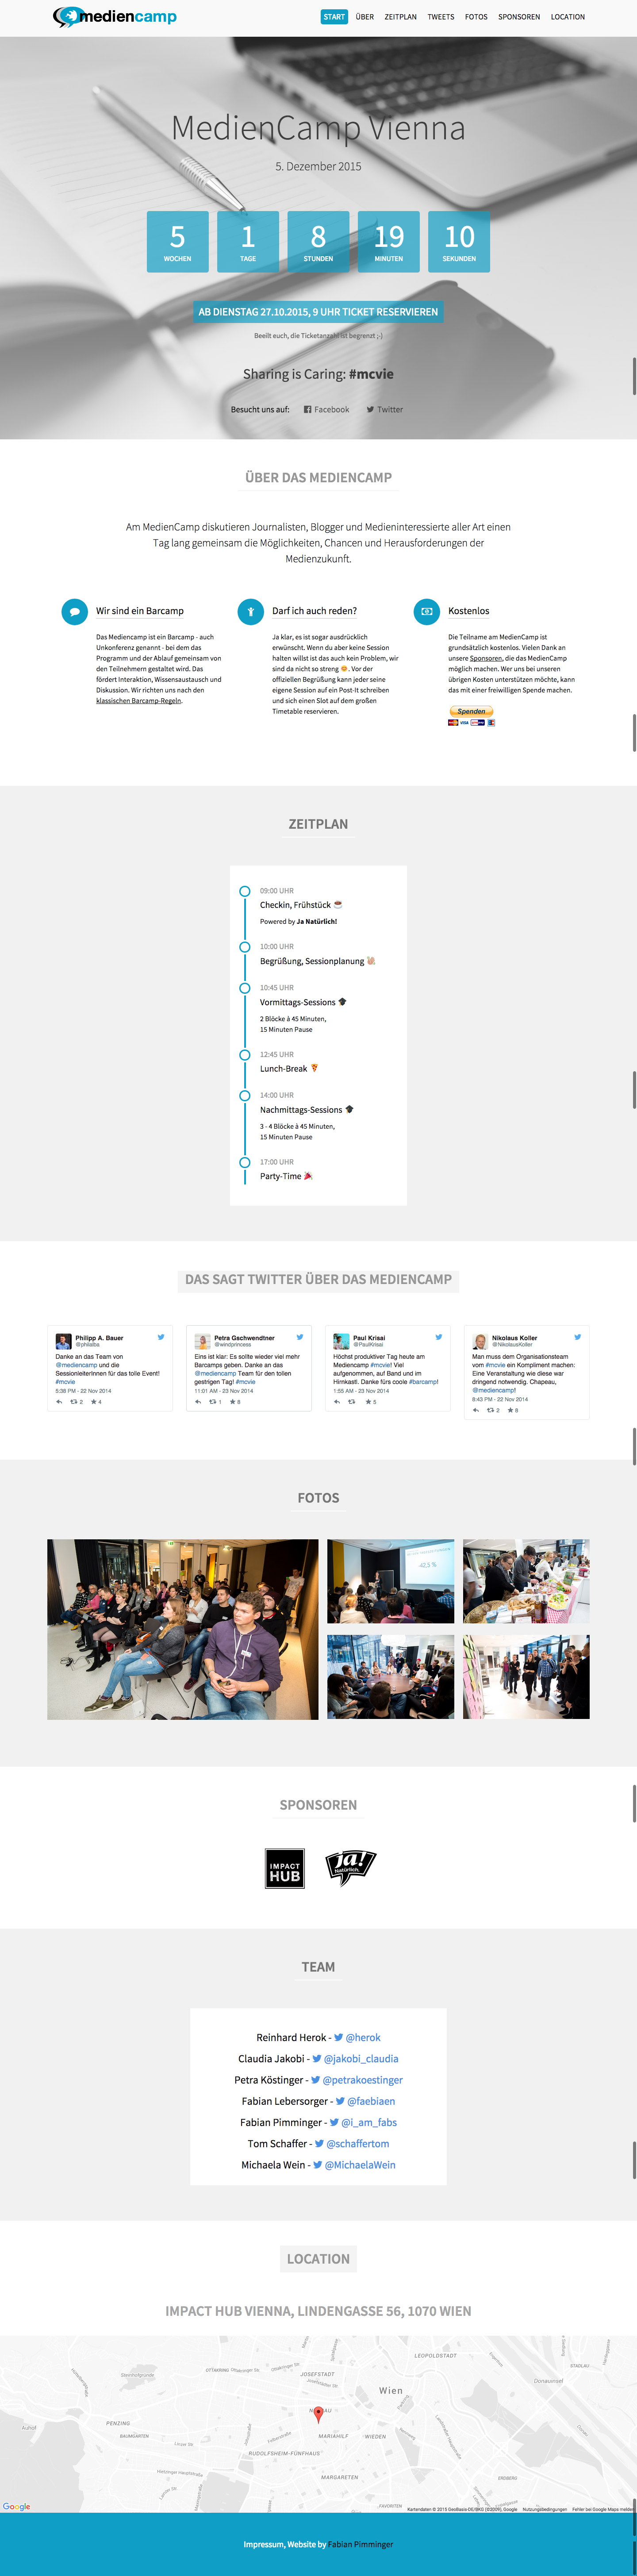 Mediencamp 2015 Website